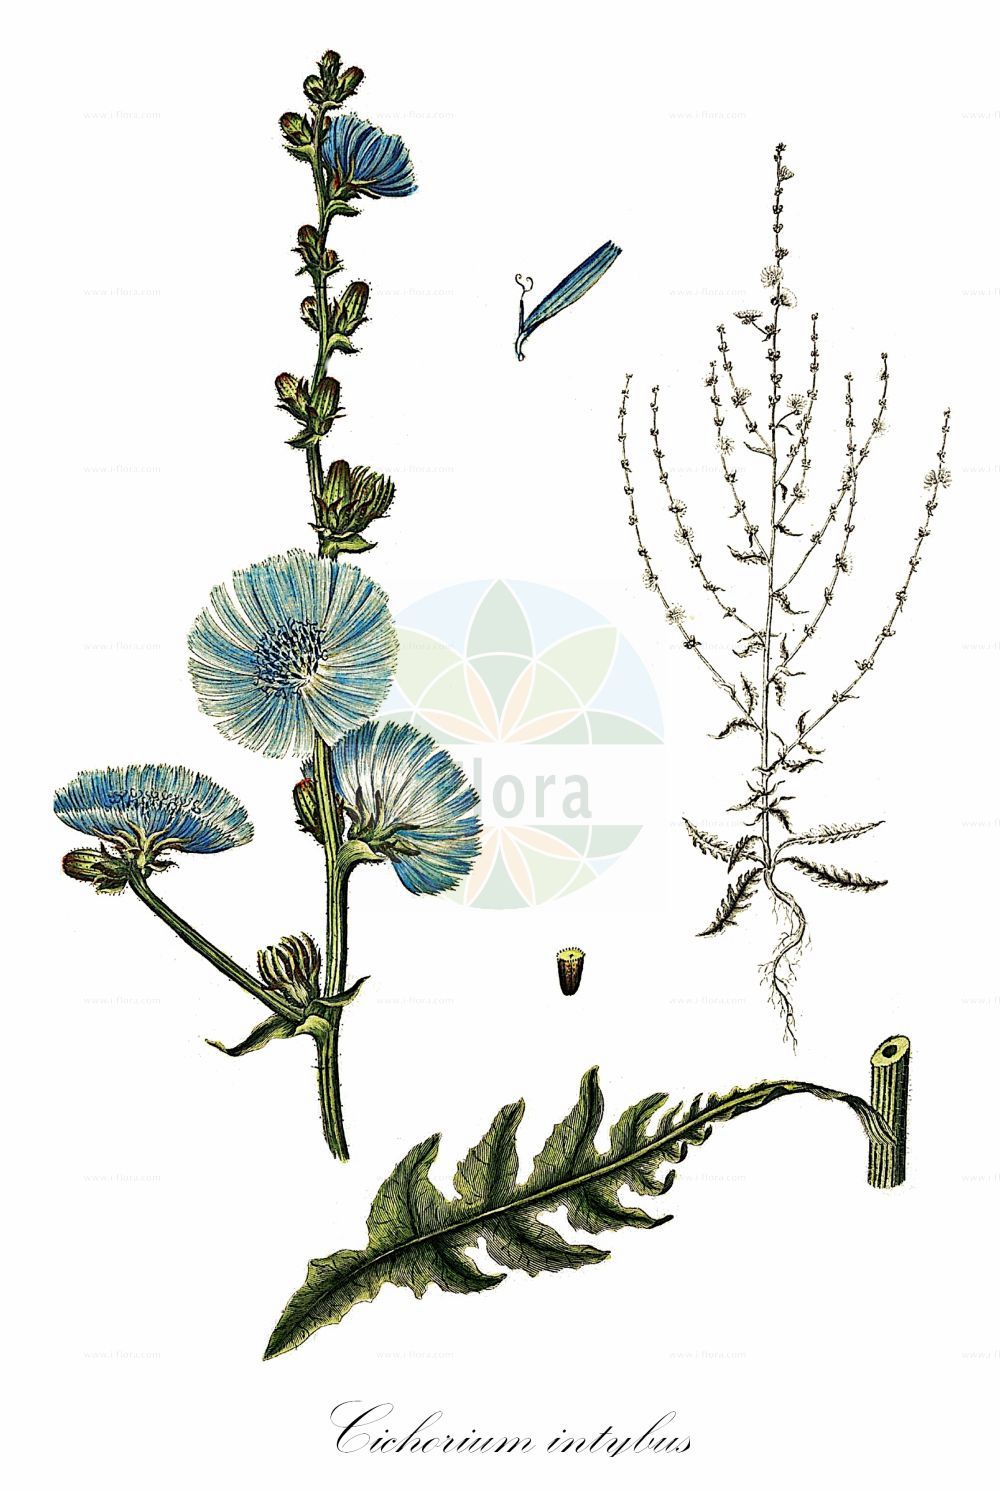 Historische Abbildung von Cichorium intybus (Gewöhnliche Wegwarte - Chicory). Das Bild zeigt Blatt, Bluete, Frucht und Same. ---- Historical Drawing of Cichorium intybus (Gewöhnliche Wegwarte - Chicory). The image is showing leaf, flower, fruit and seed.(Cichorium intybus,Gewöhnliche Wegwarte,Chicory,Cichorium balearicum,Cichorium glabratum,Cichorium glaucum,Cichorium hirsutum,Cichorium intybus,Cichorium intybus var. sativum,Gewoehnliche Wegwarte,Kaffeezichorie,Wurzelzichorie,Chicory,Wild Chicory,Wild Succory,Cichorium,Wegwarte,Chicory,Asteraceae,Korbblütengewächse,Daisy family,Blatt,Bluete,Frucht,Same,leaf,flower,fruit,seed,Oeder (1761-1883))